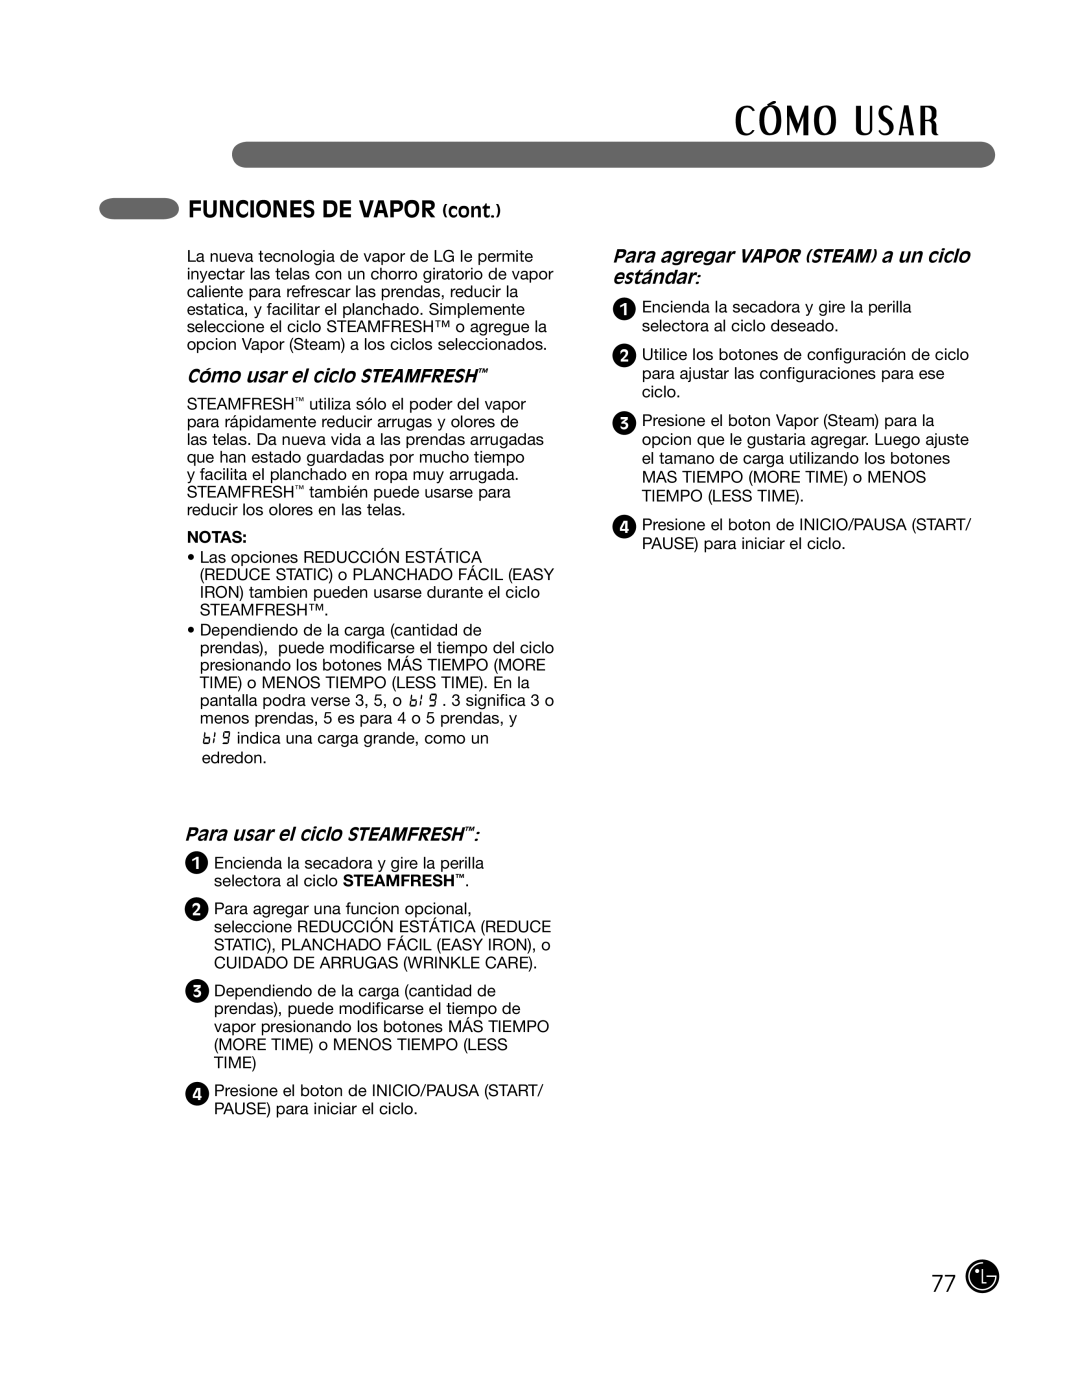 LG Electronics P154 manual FUNCIONES DE VAPOR cont, Cómo usar el ciclo SteamFresh, Para usar el ciclo SteamFresh 